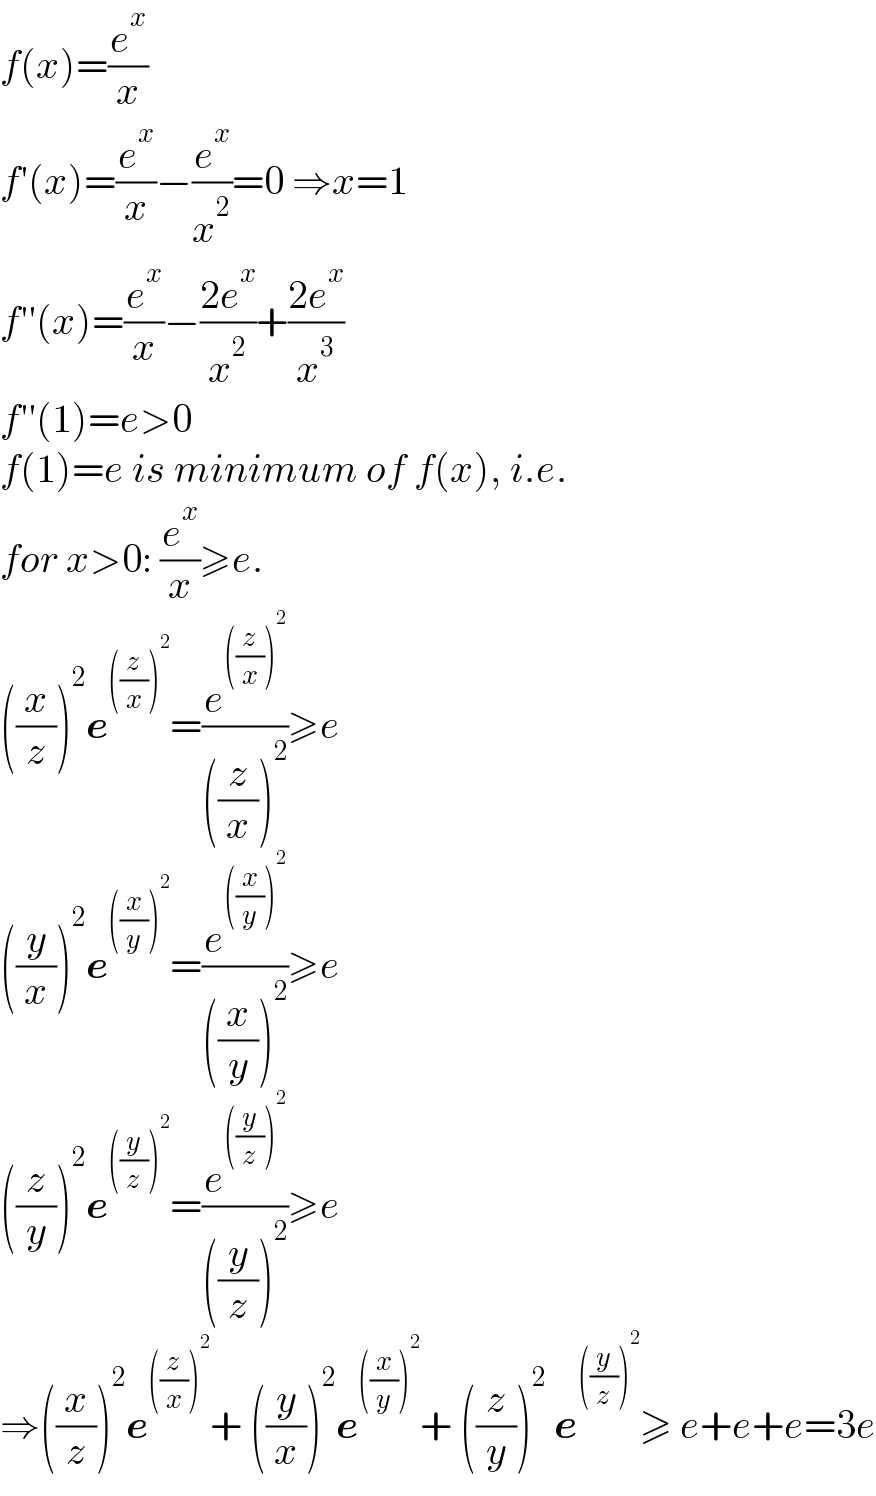 f(x)=(e^x /x)  f′(x)=(e^x /x)−(e^x /x^2 )=0 ⇒x=1  f′′(x)=(e^x /x)−((2e^x )/x^2 )+((2e^x )/x^3 )  f′′(1)=e>0  f(1)=e is minimum of f(x), i.e.  for x>0: (e^x /x)≥e.  ((x/z))^2 e^(((z/x))^2 ) =(e^(((z/x))^2 ) /(((z/x))^2 ))≥e  ((y/x))^2 e^(((x/y))^2 ) =(e^(((x/y))^2 ) /(((x/y))^2 ))≥e  ((z/y))^2 e^(((y/z))^2 ) =(e^(((y/z))^2 ) /(((y/z))^2 ))≥e  ⇒((x/z))^2 e^(((z/x))^2 ) + ((y/x))^2 e^(((x/y))^2 ) + ((z/y))^2  e^(((y/z))^2 ) ≥ e+e+e=3e  